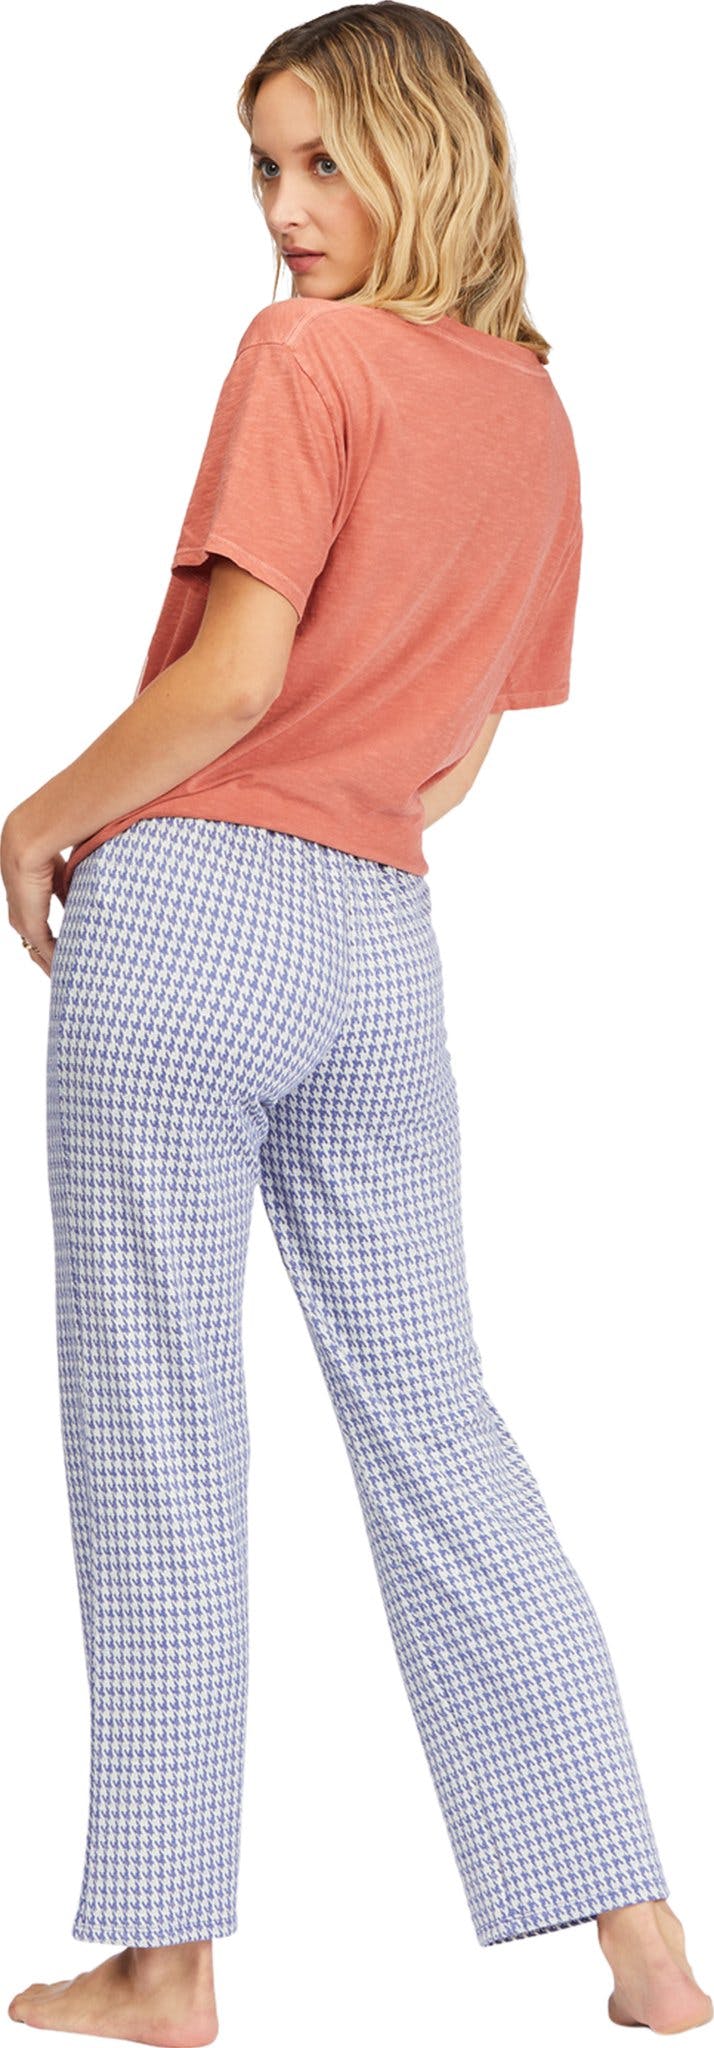 Numéro de l'image de la galerie de produits 3 pour le produit Pantalon en tricot Keep It Straight - Femme